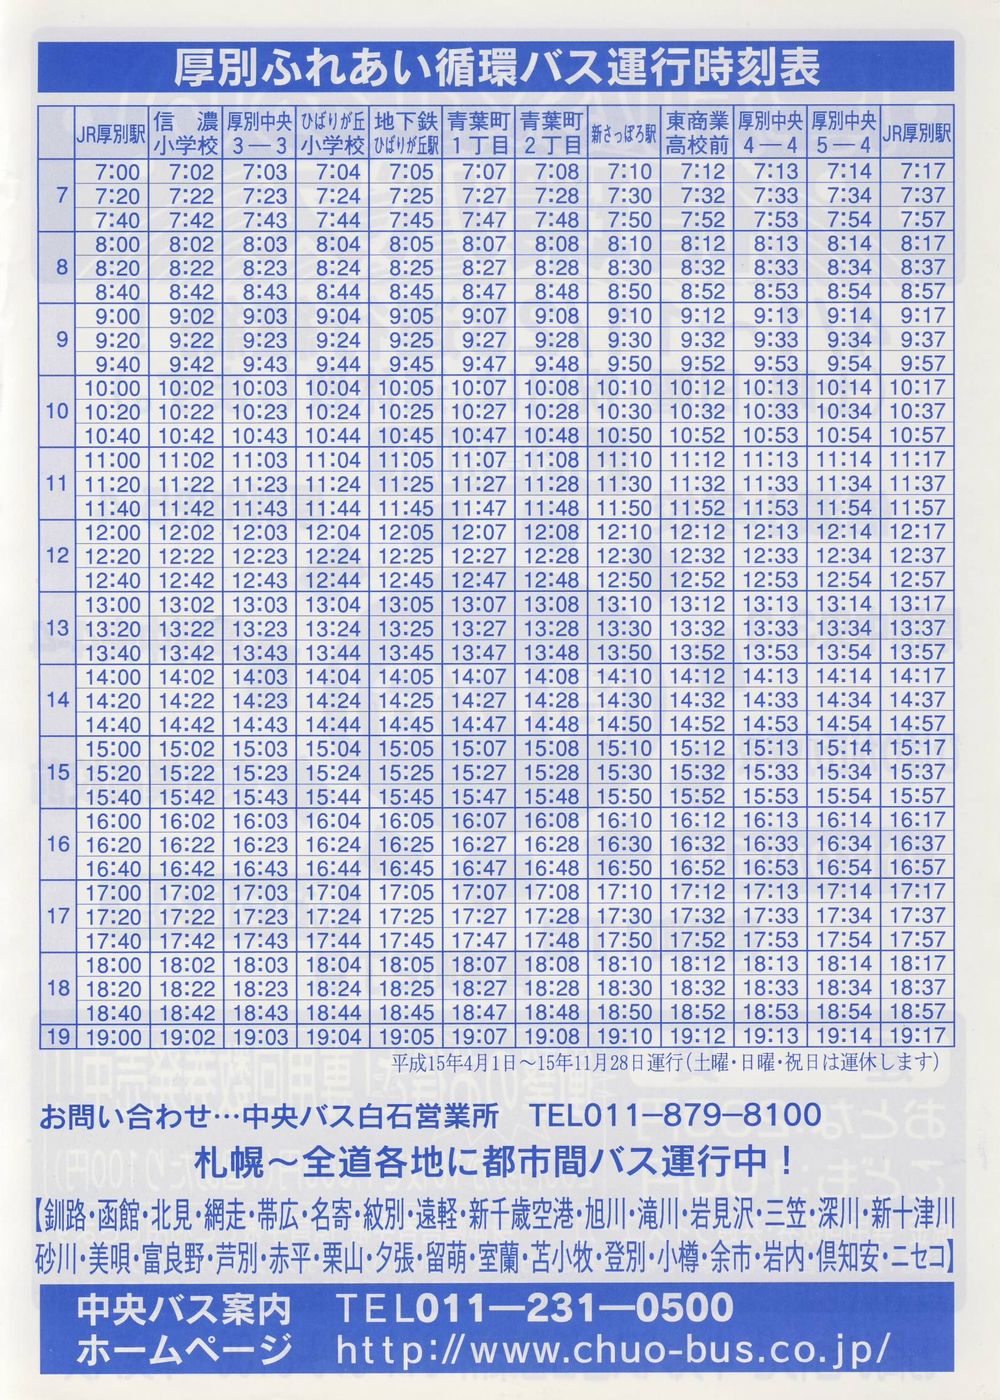 2003-04-01改正_北海道中央バス(札幌)_厚別ふれあい循環バスチラシ裏面